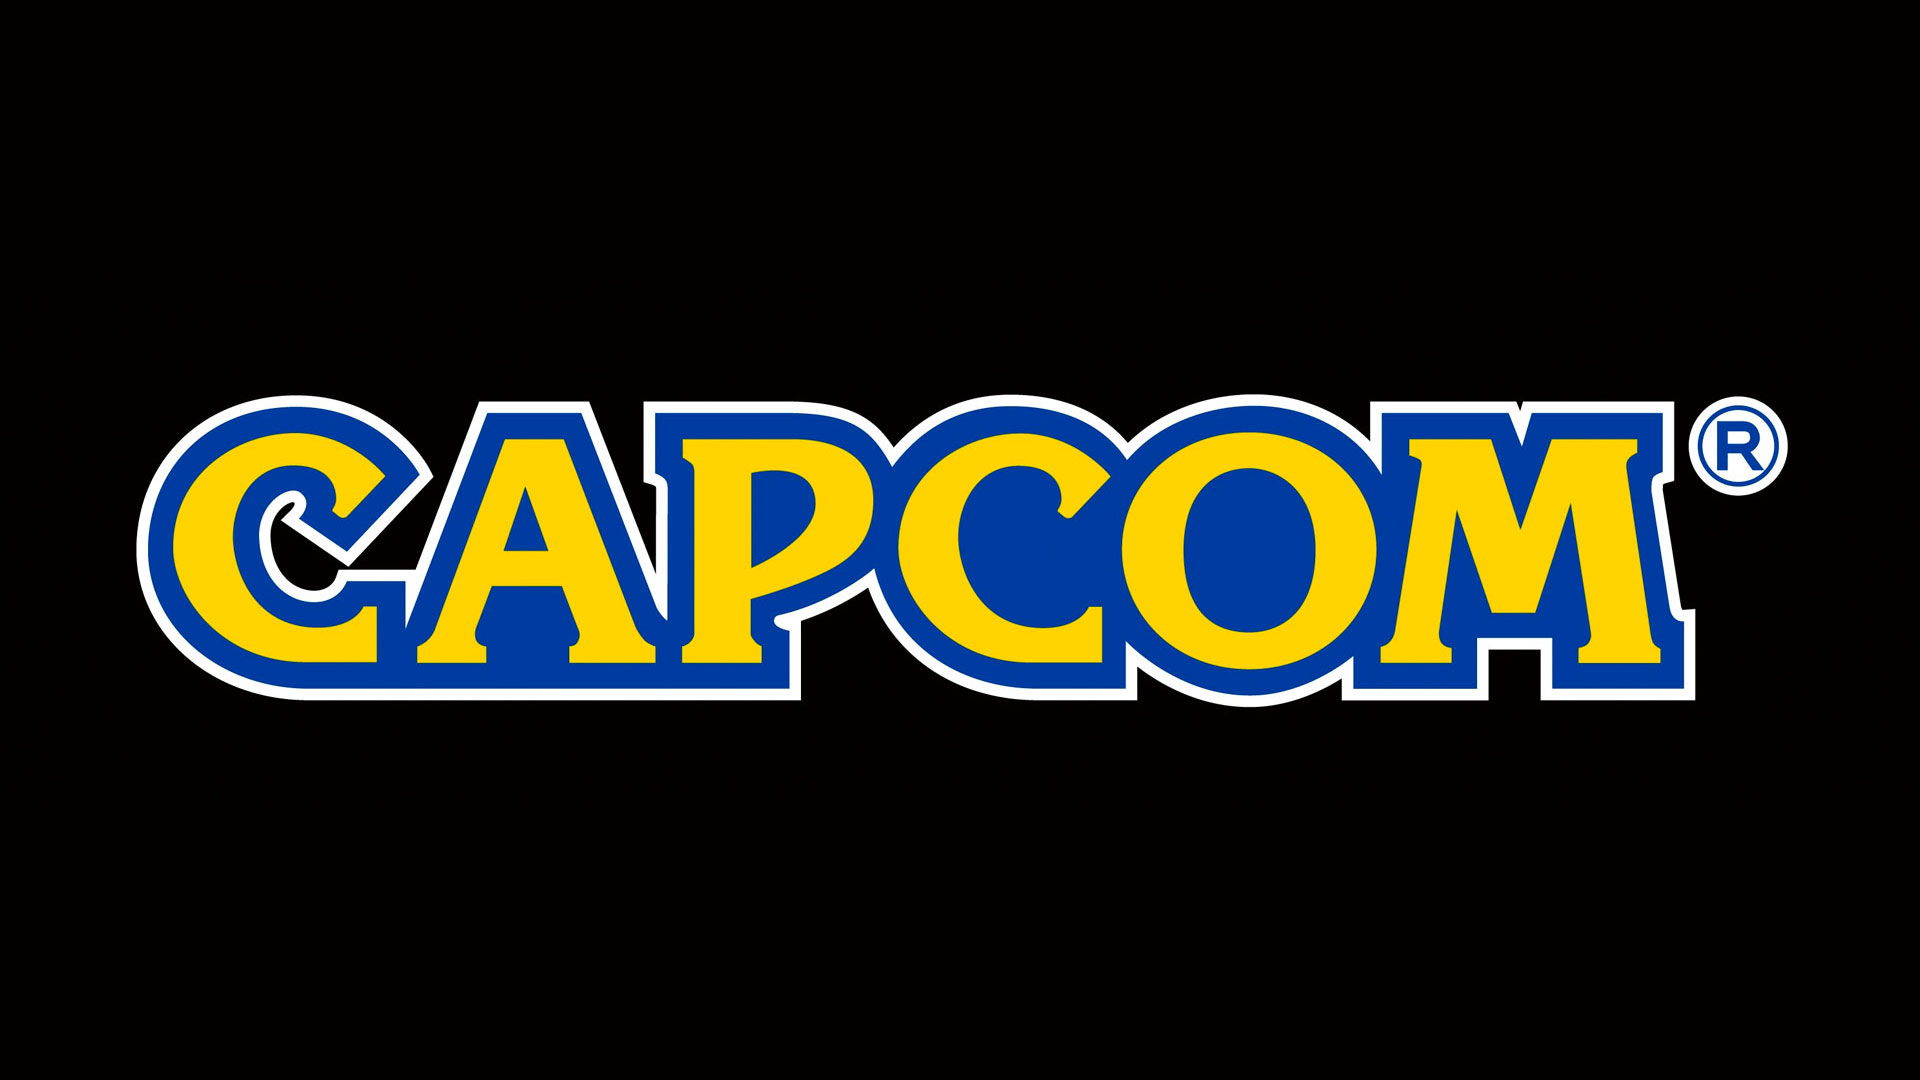 กองทุนรัฐบาลซาอุฯเข้าซื้อหุ้นรายย่อยใน Capcom และ Nexon เป็นเงินมูลค่ากว่า 1 พันล้านดอลลาร์สหรัฐฯ